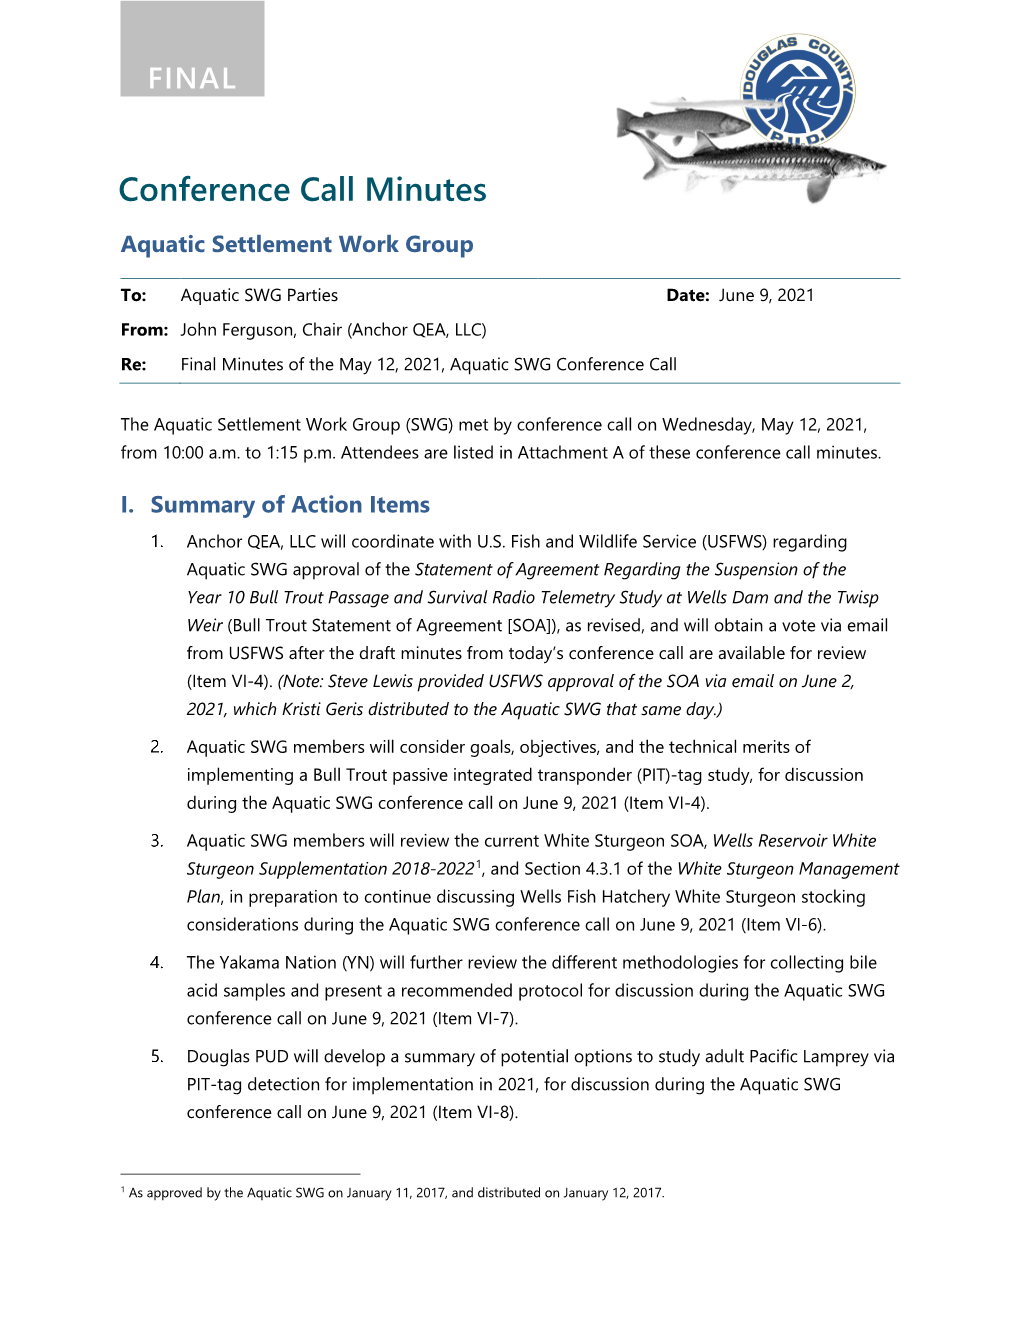 Aquatic SWG Conference Call Minutes